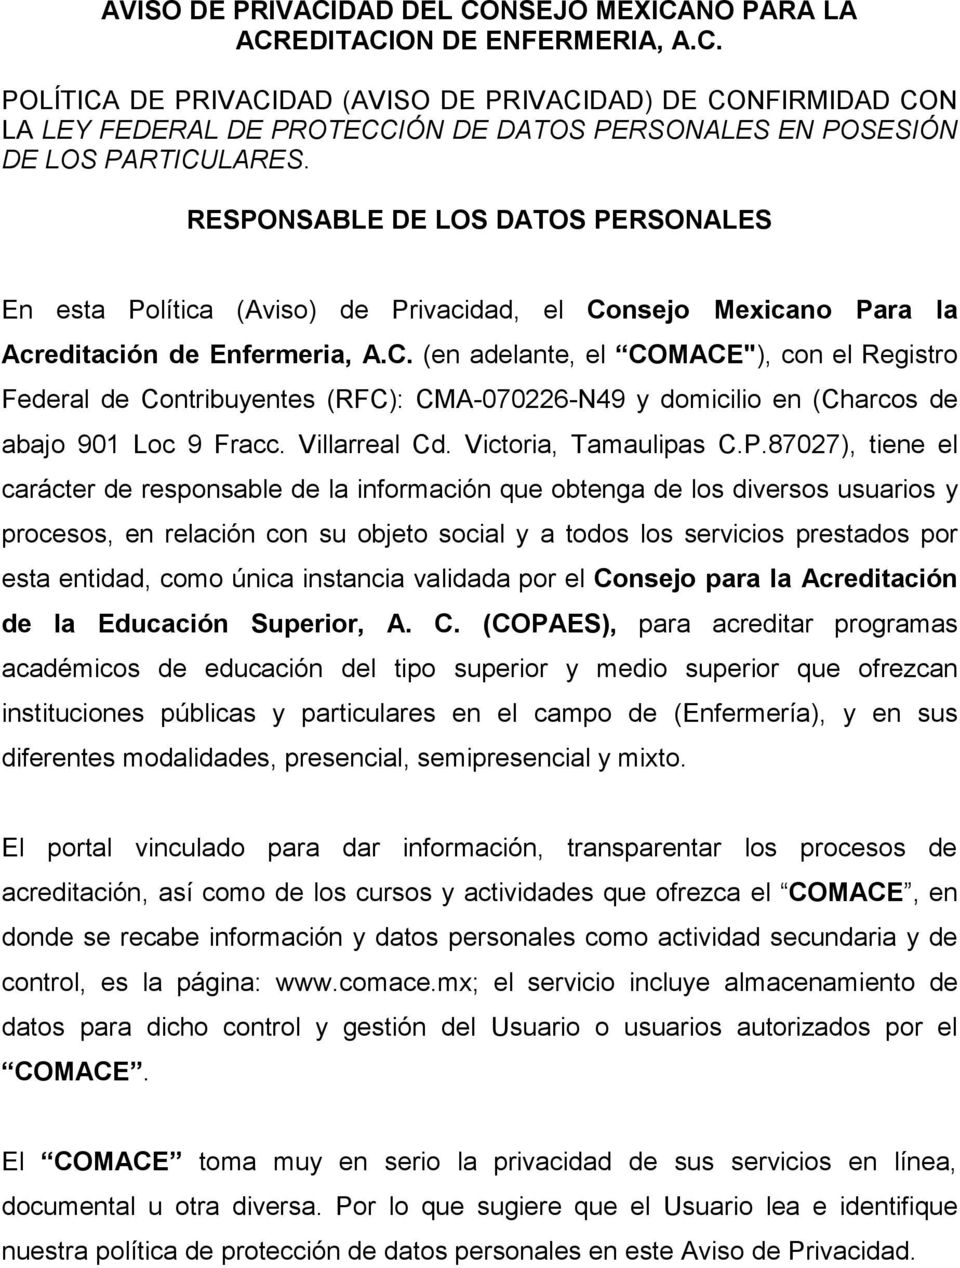 nsejo Mexicano Para la Acreditación de Enfermeria, A.C. (en adelante, el COMACE"), con el Registro Federal de Contribuyentes (RFC): CMA-070226-N49 y domicilio en (Charcos de abajo 901 Loc 9 Fracc.